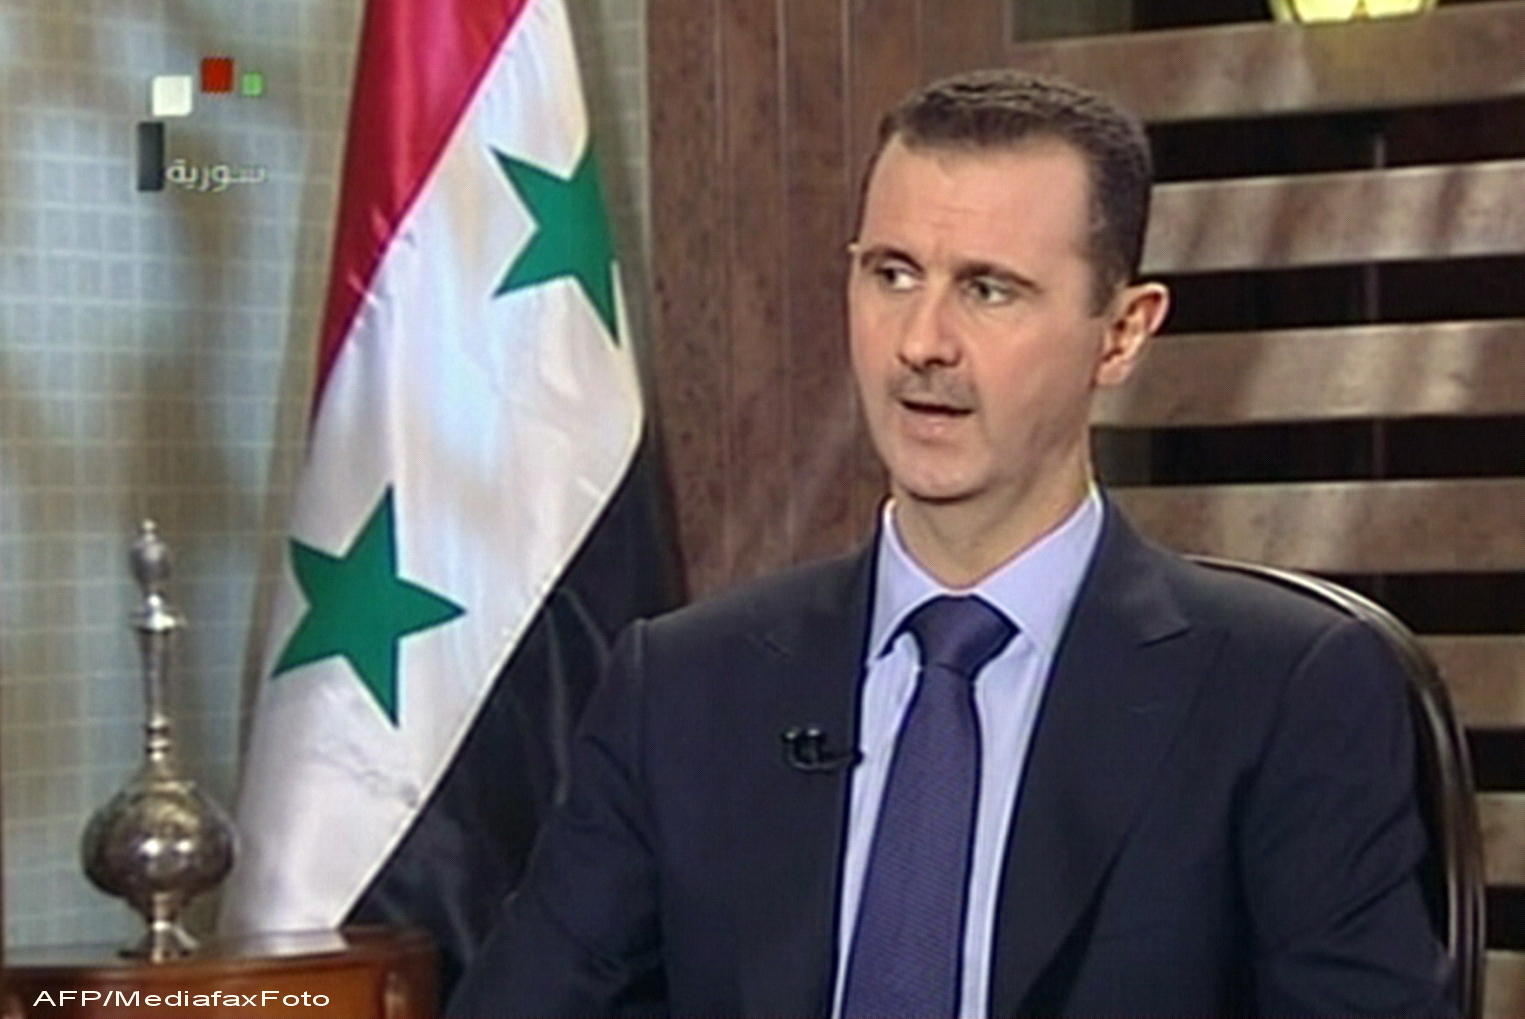 “Daca Rusia esueaza in Siria, Orientul Mijlociu va fi distrus”. Avertizarea facuta de Bashar Al-Assad